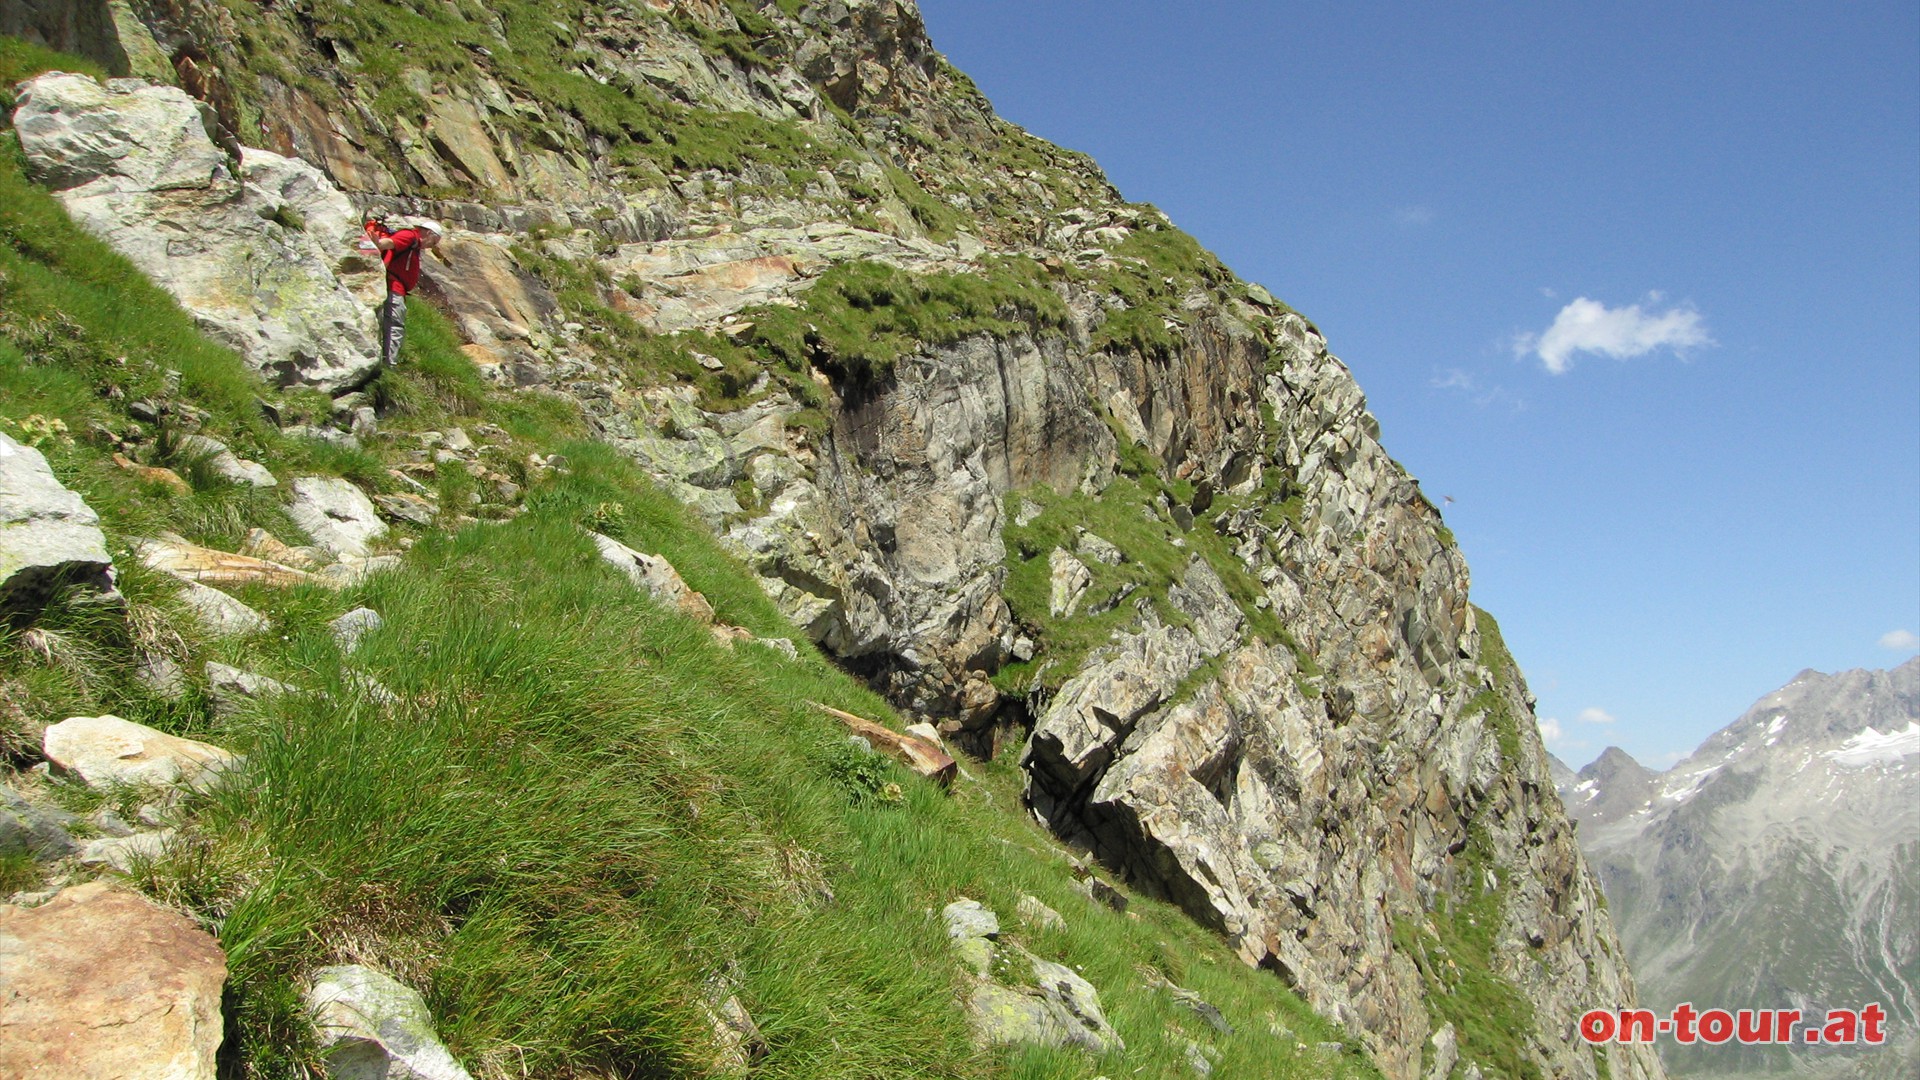 Eine kurze Passage durch die Grat-Steilwand gilt es noch zu überwinden.